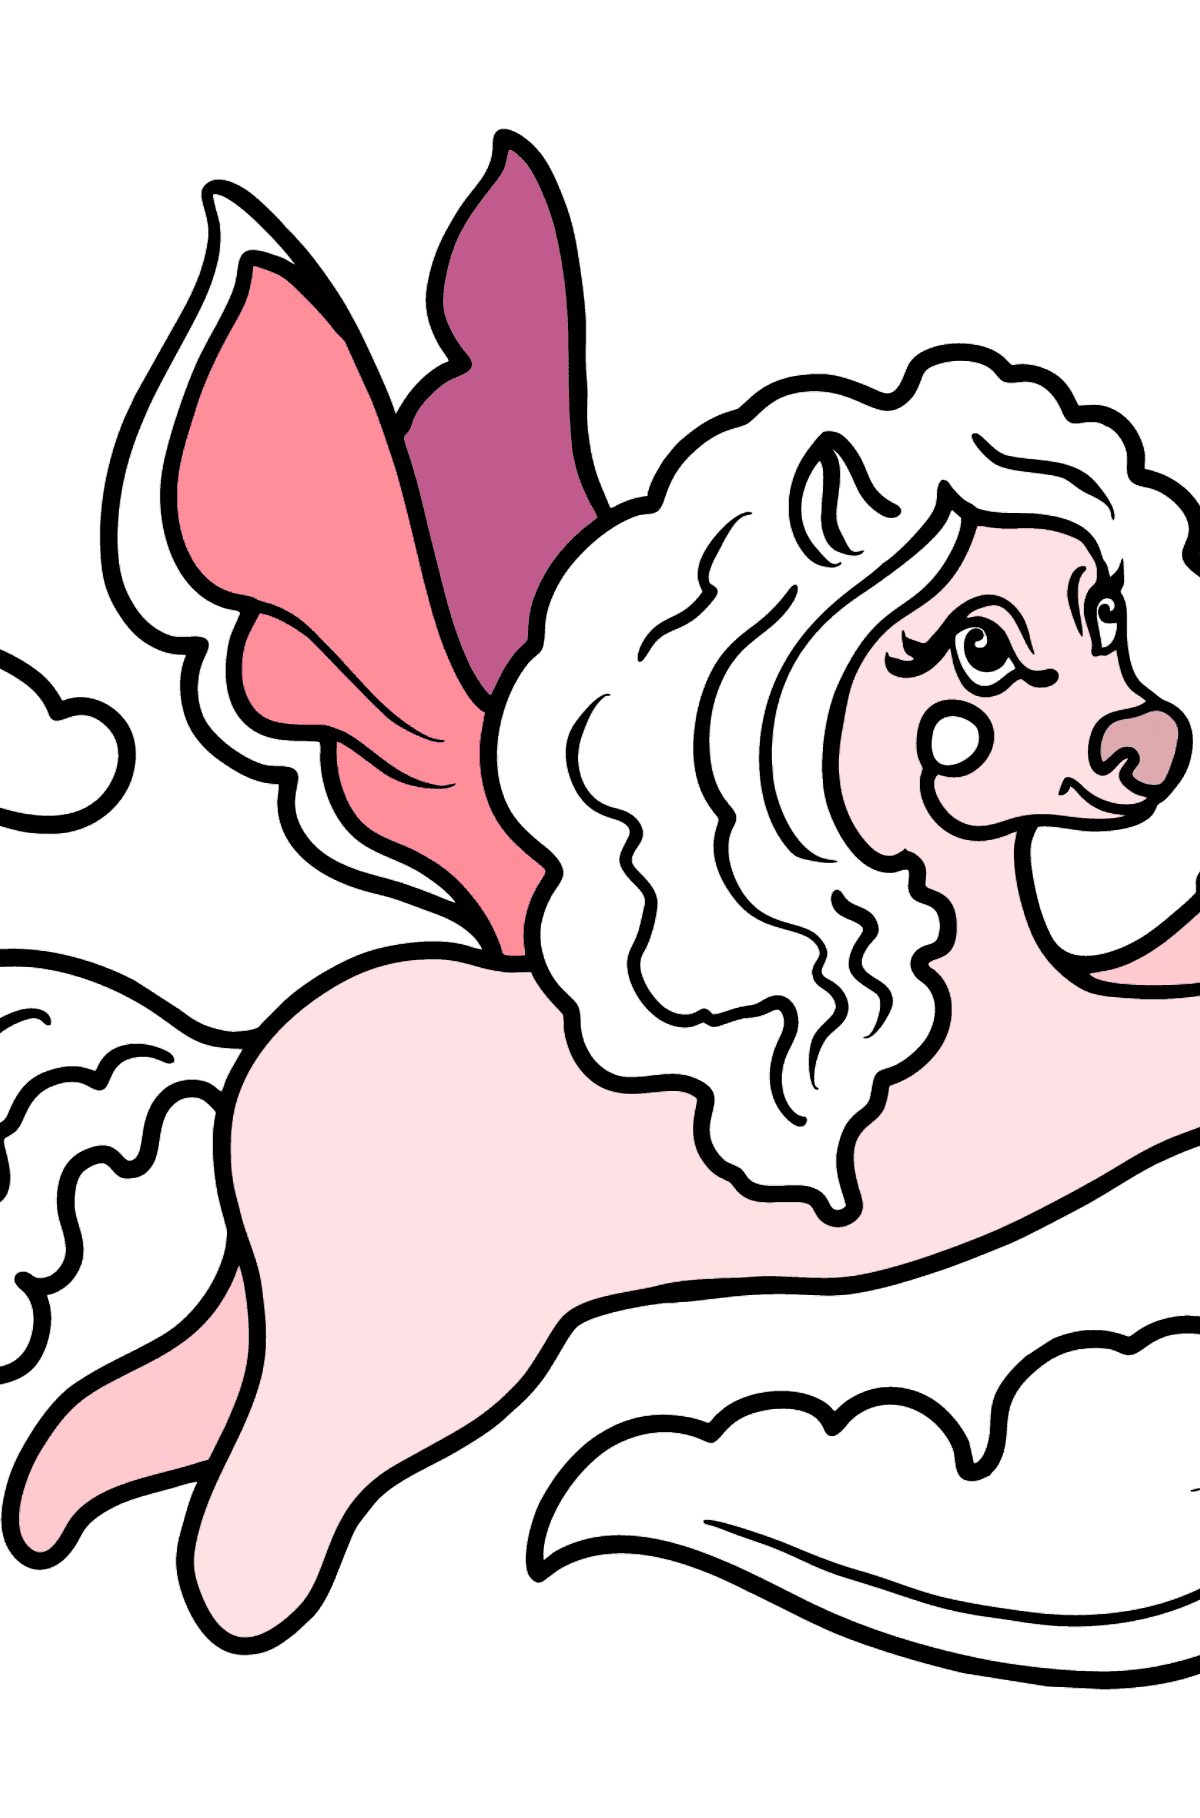 Desenho para colorir - Pony está voando - Imagens para Colorir para Crianças